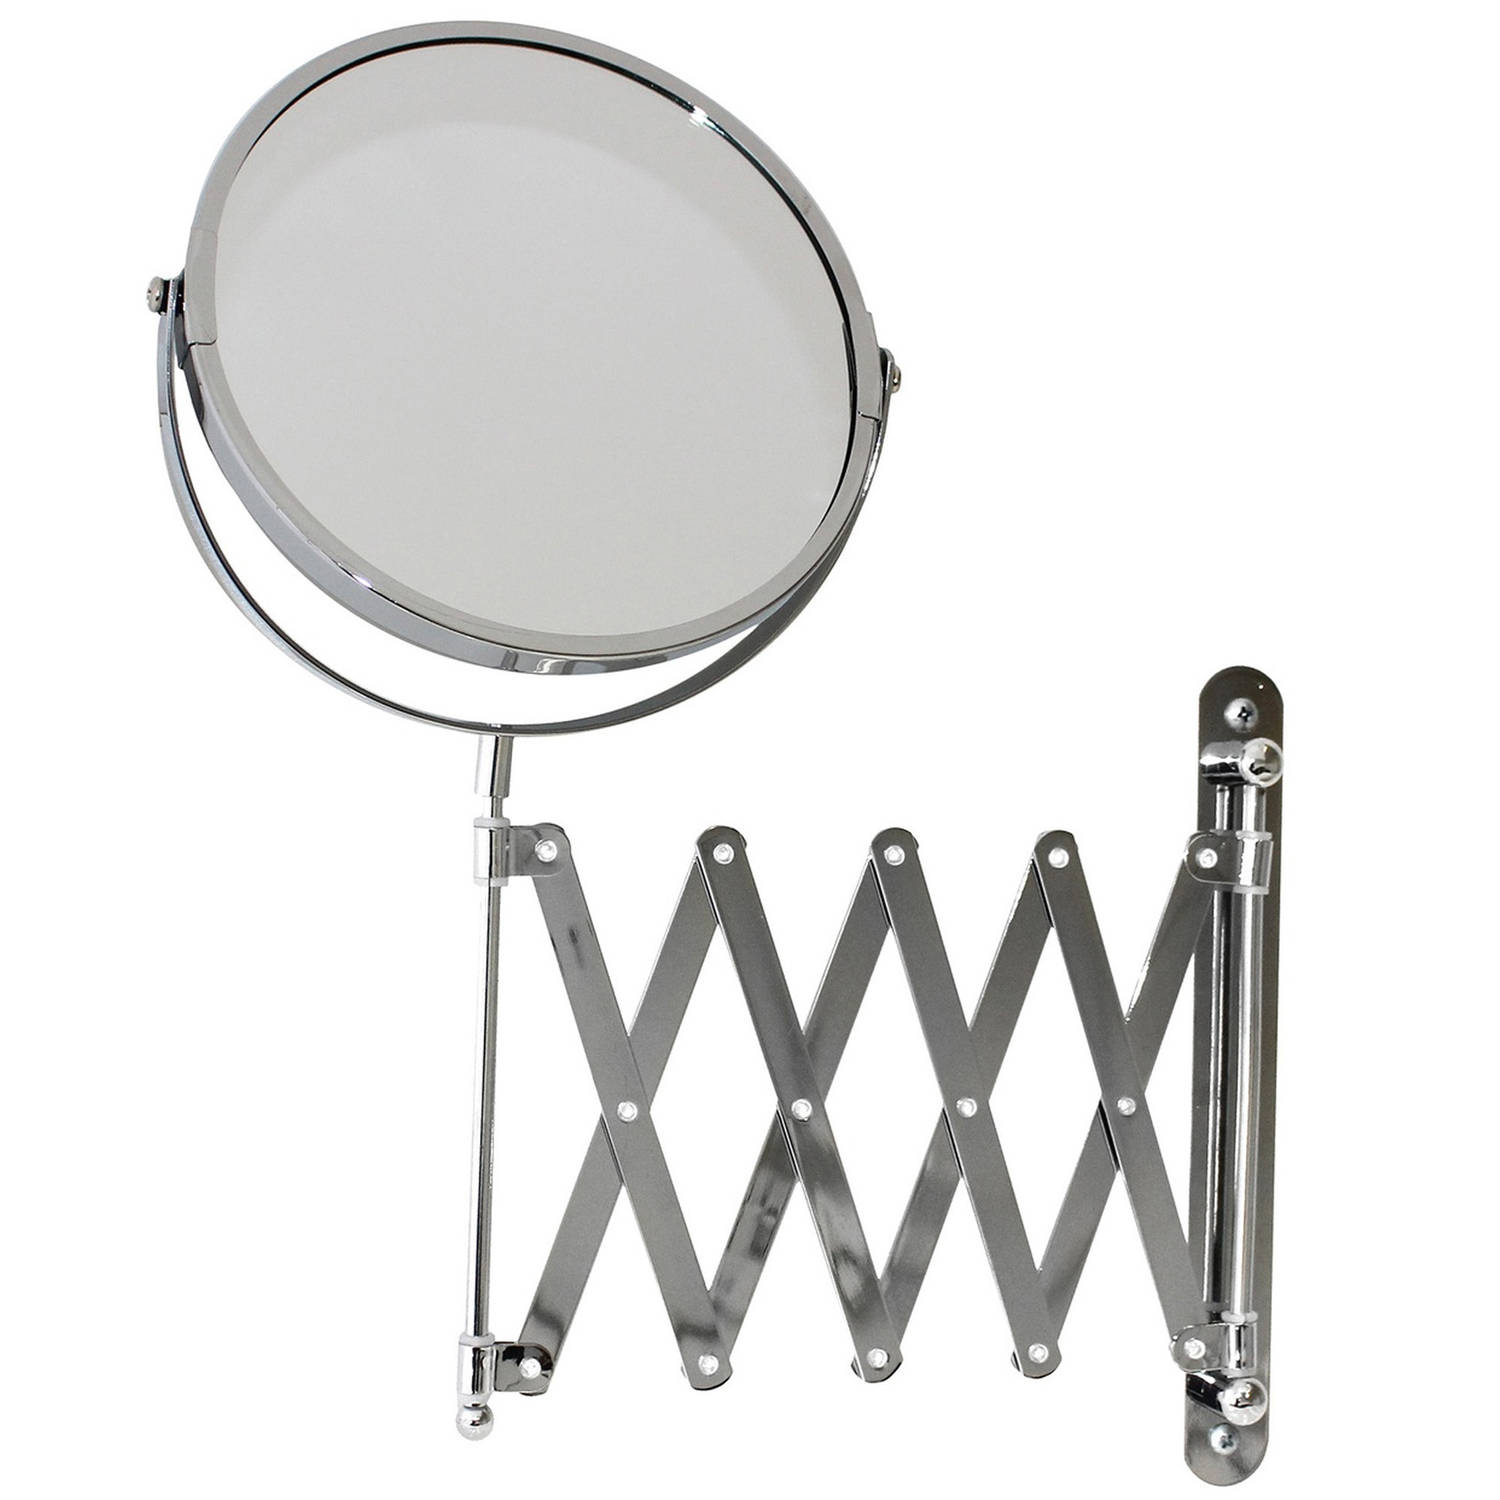 MSV Make-up spiegel - 2-zijdig - uitschuifbaar vanuit de wand - chrome - zilver - dia 17 cm